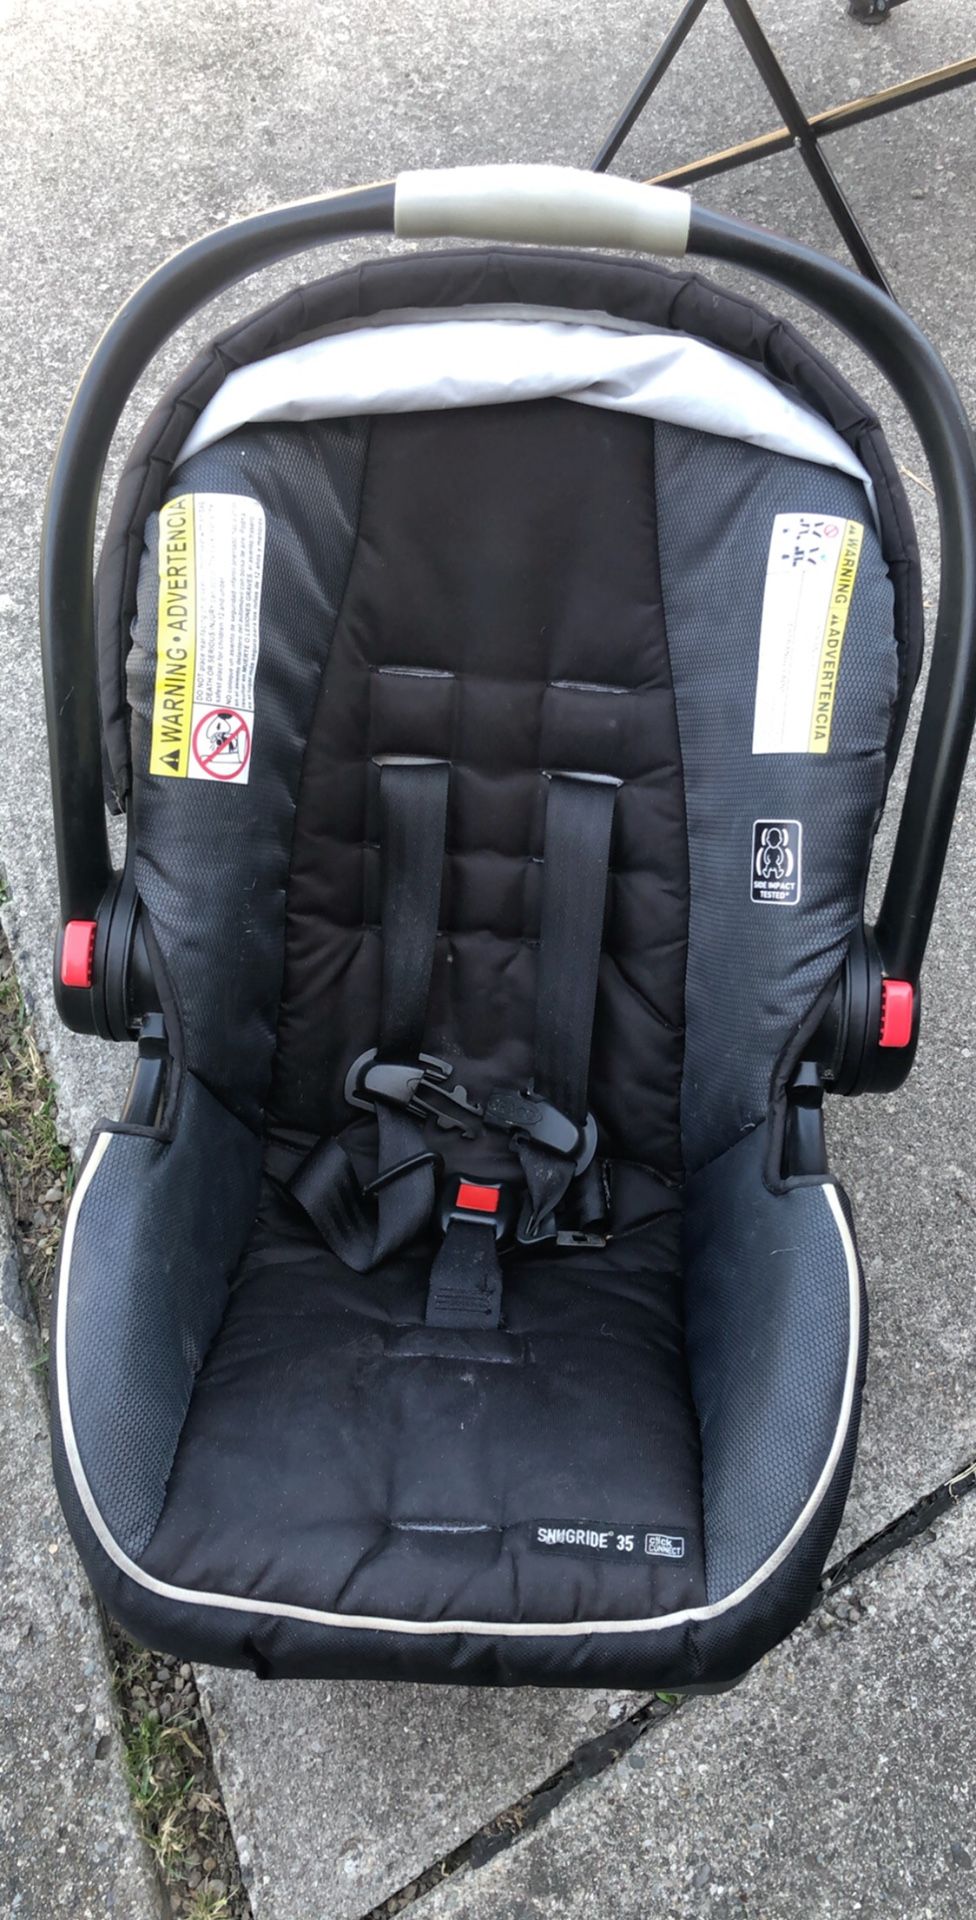 Garco Baby Car Seat